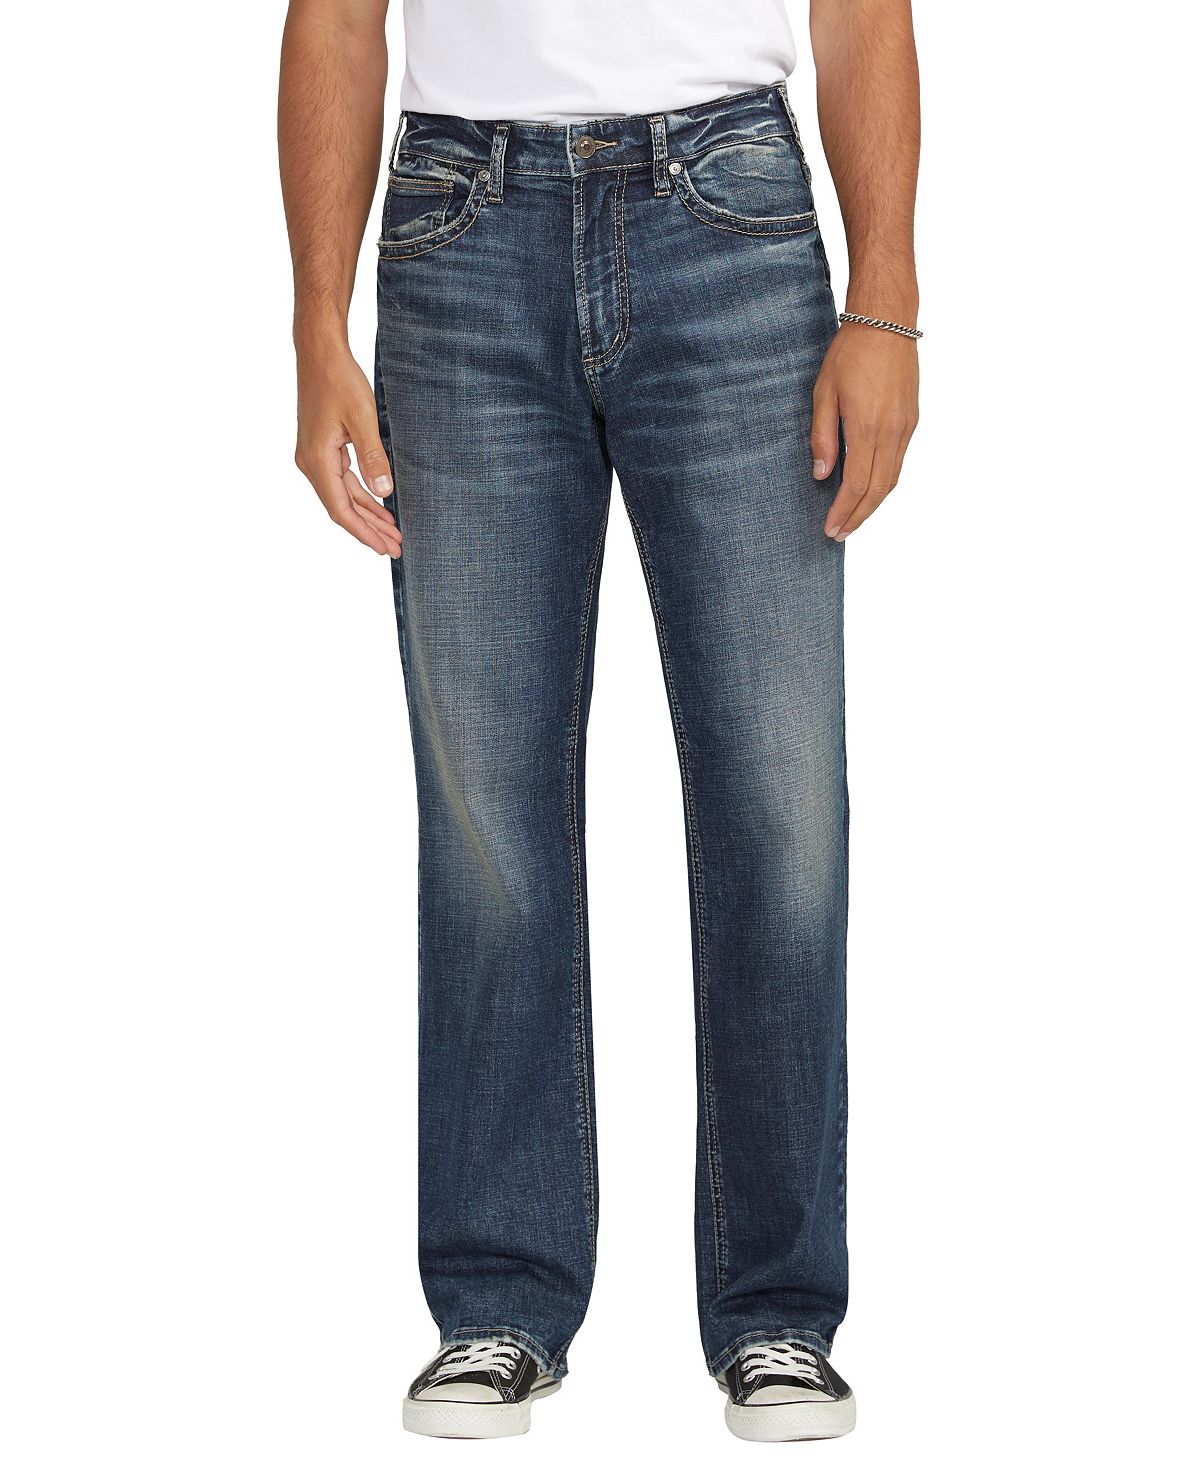 Мужские прямые джинсы свободного покроя Gordie Silver Jeans Co.